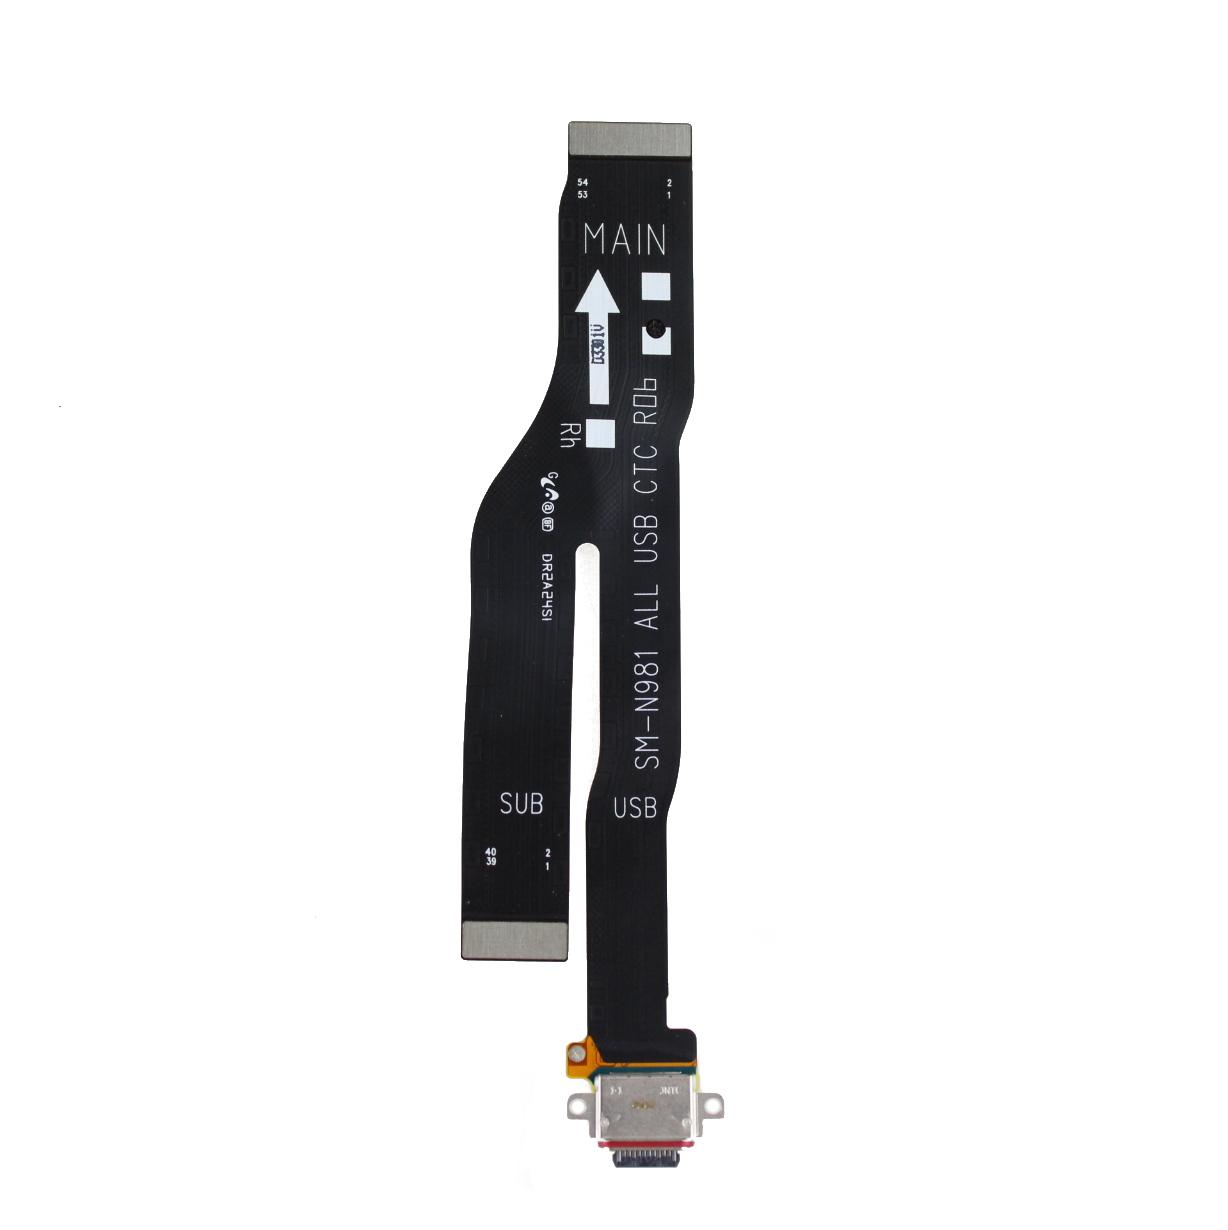 Originál Deska USB s nabíjecím konektorem Samsung Galaxy Note 20 SM-N981 / SM-N980